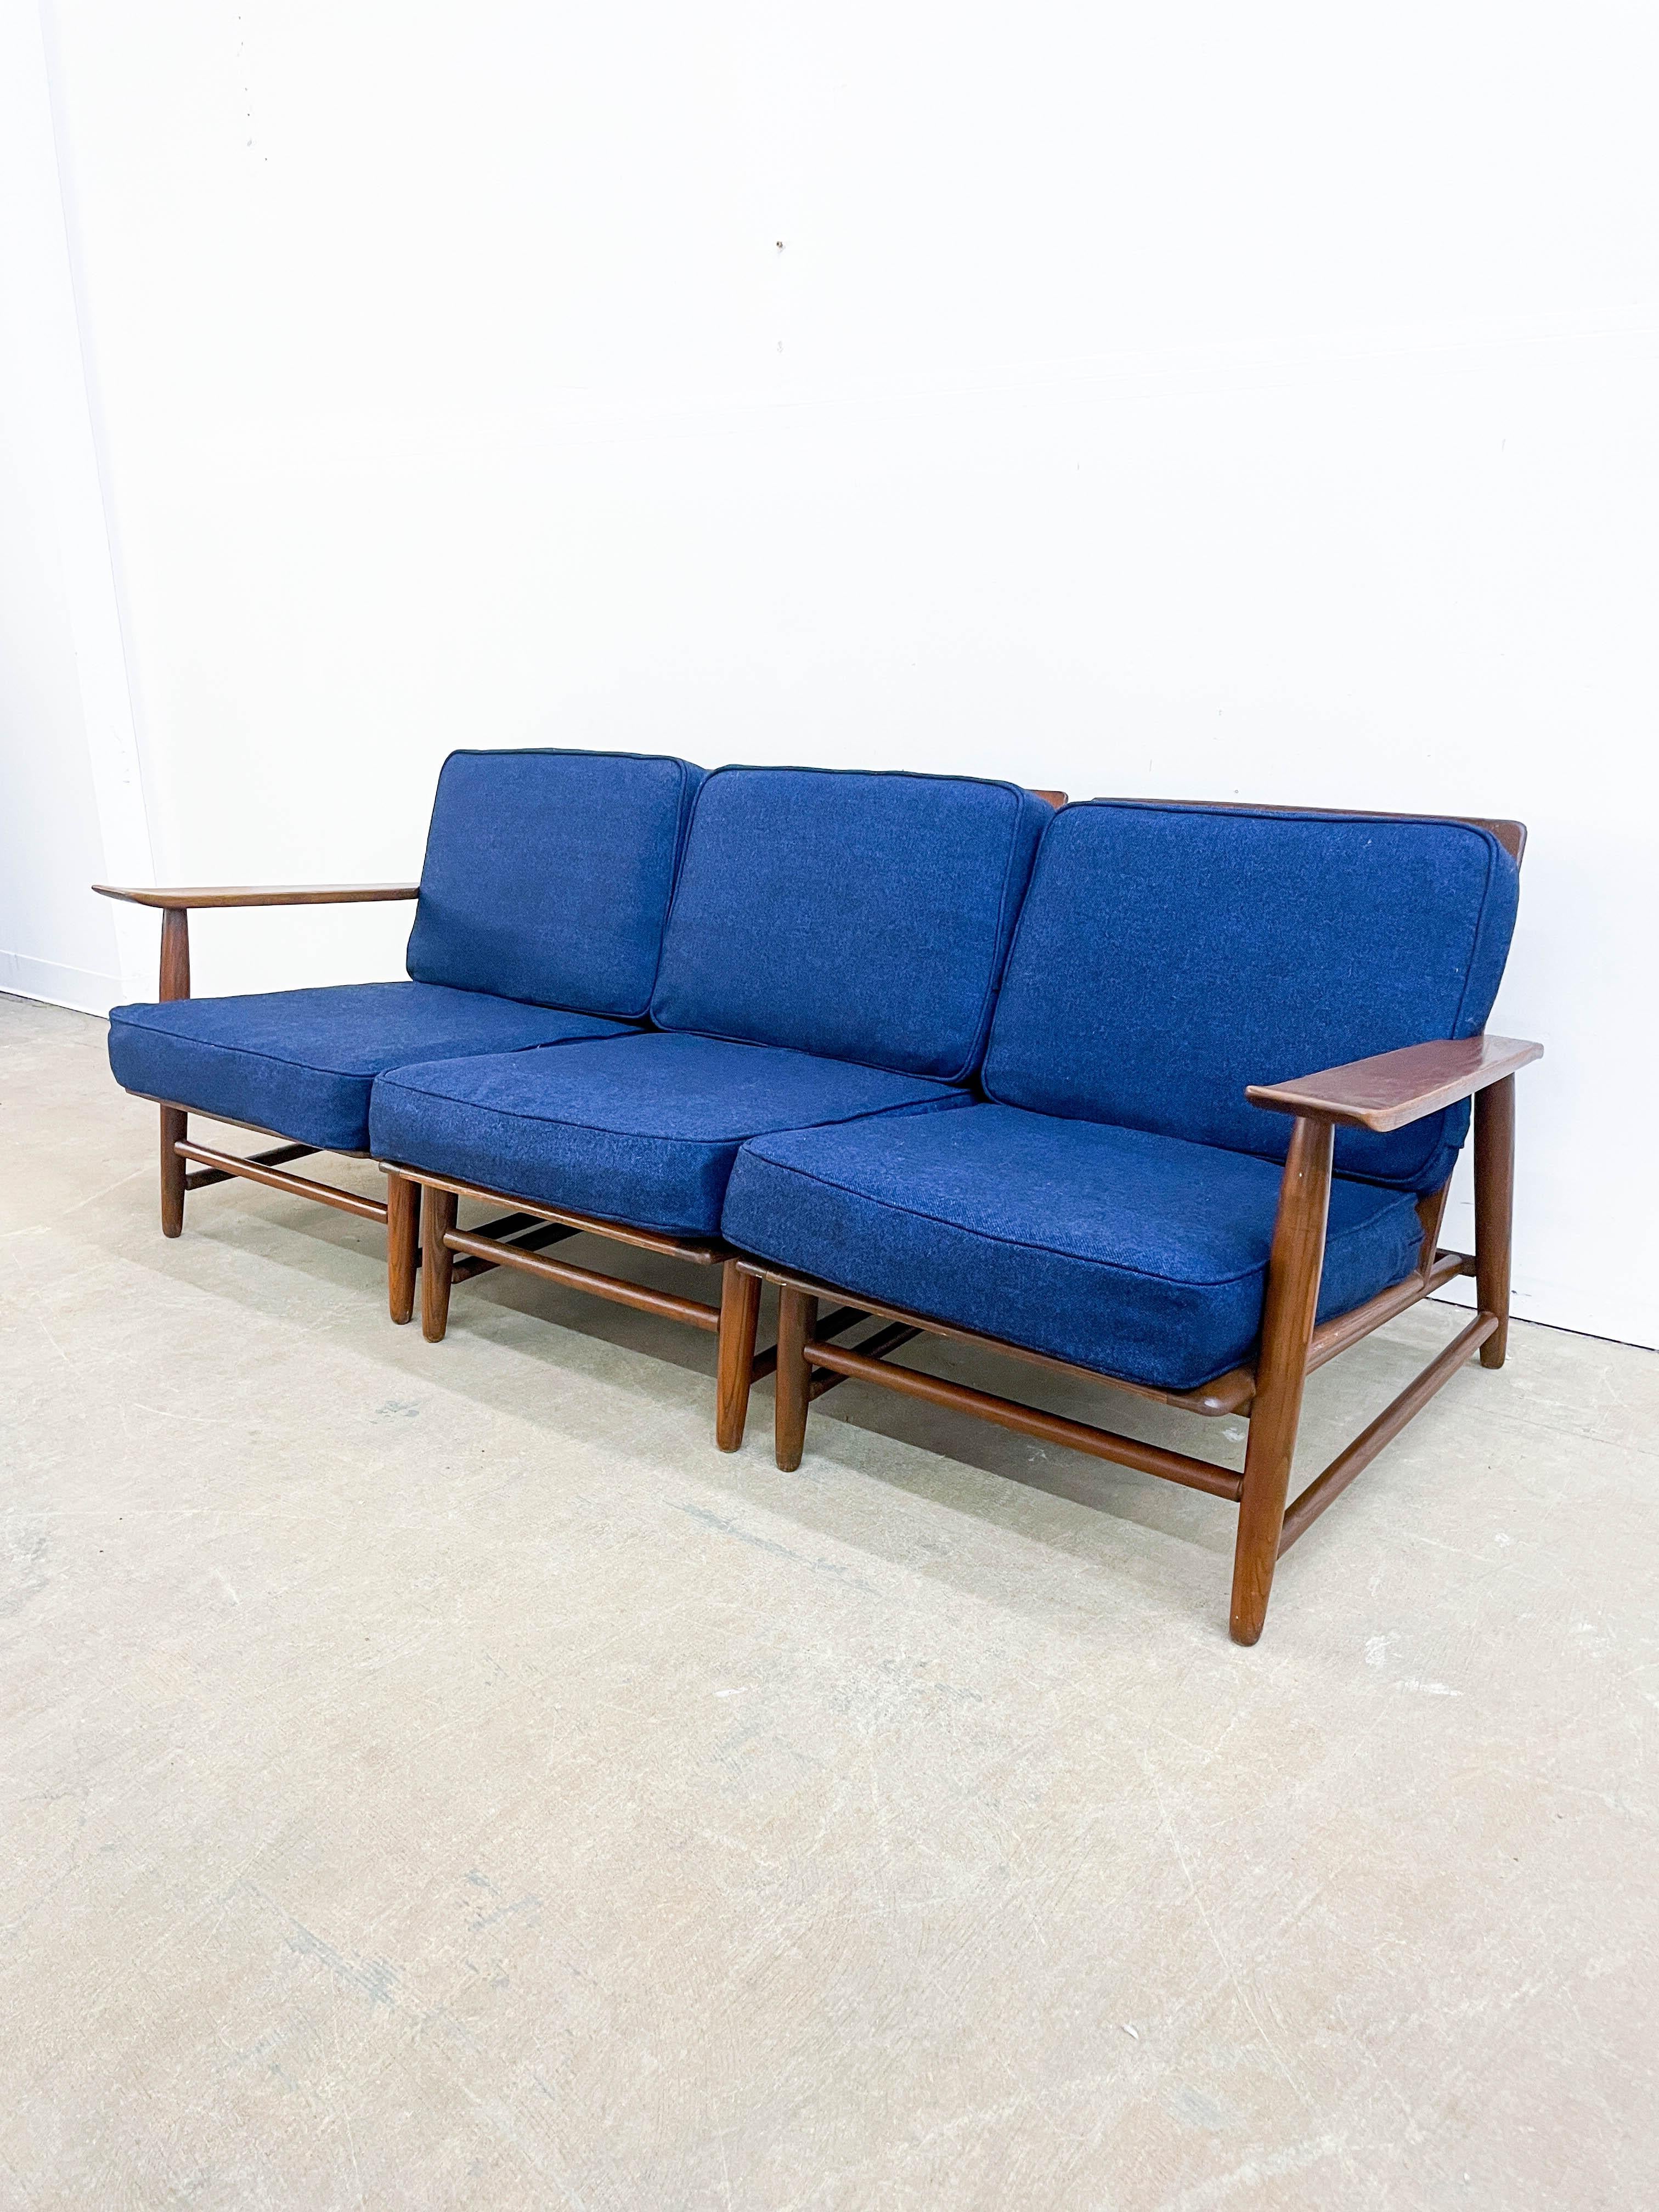 Wood Haywood Wakefield Nakashima style modular seating